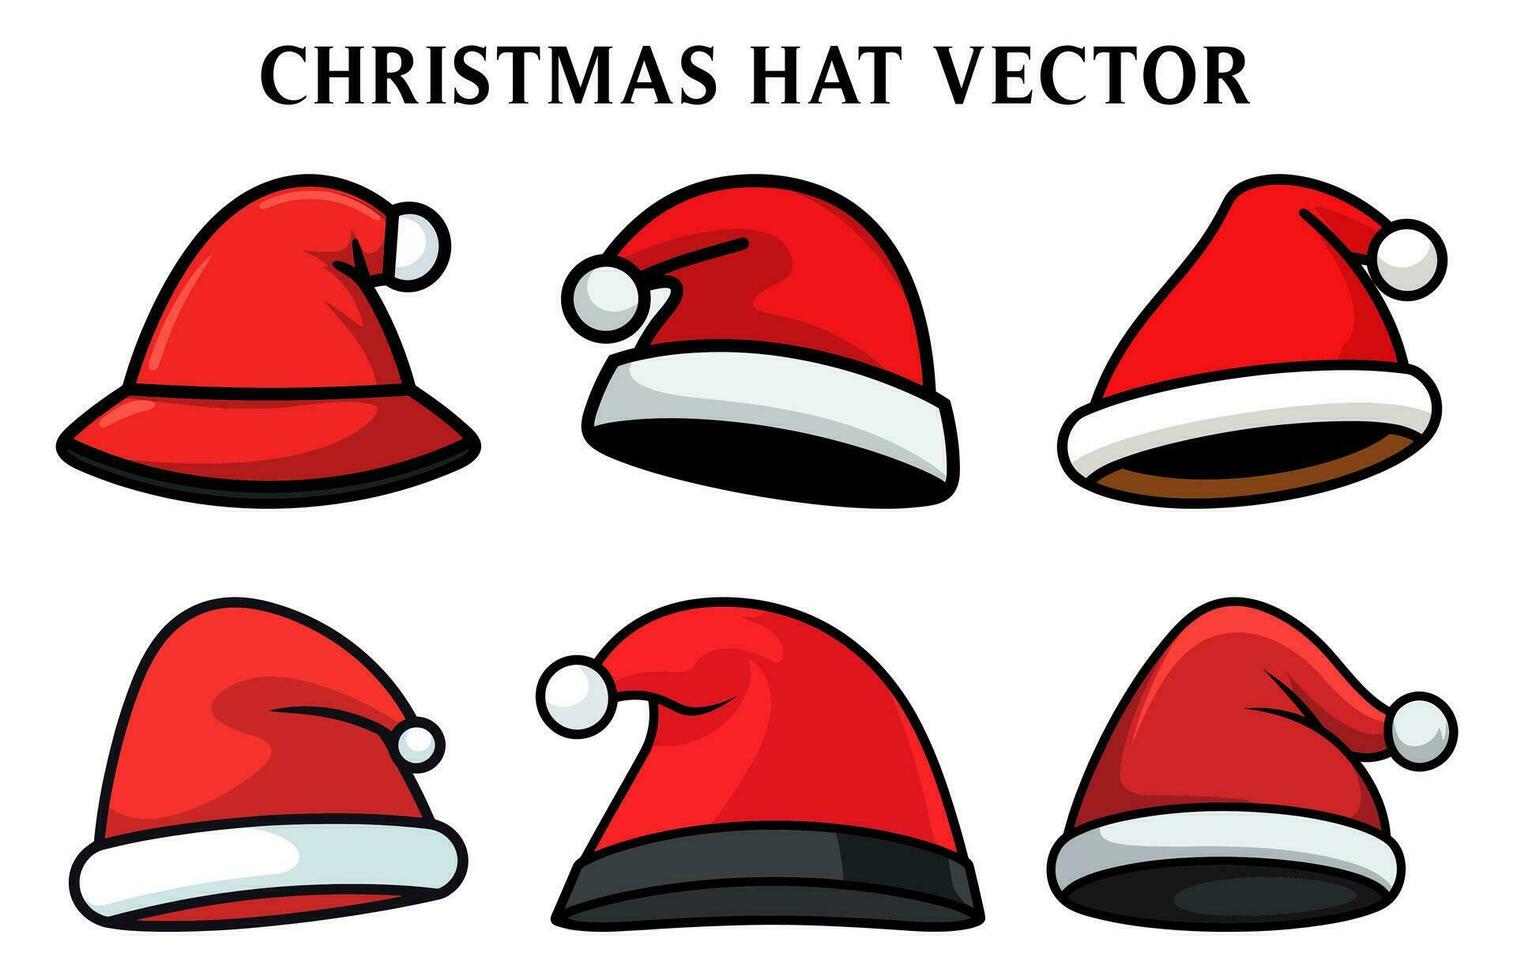 de kerstman claus hoed vector illustratie set, Kerstmis hoed clip art bundel